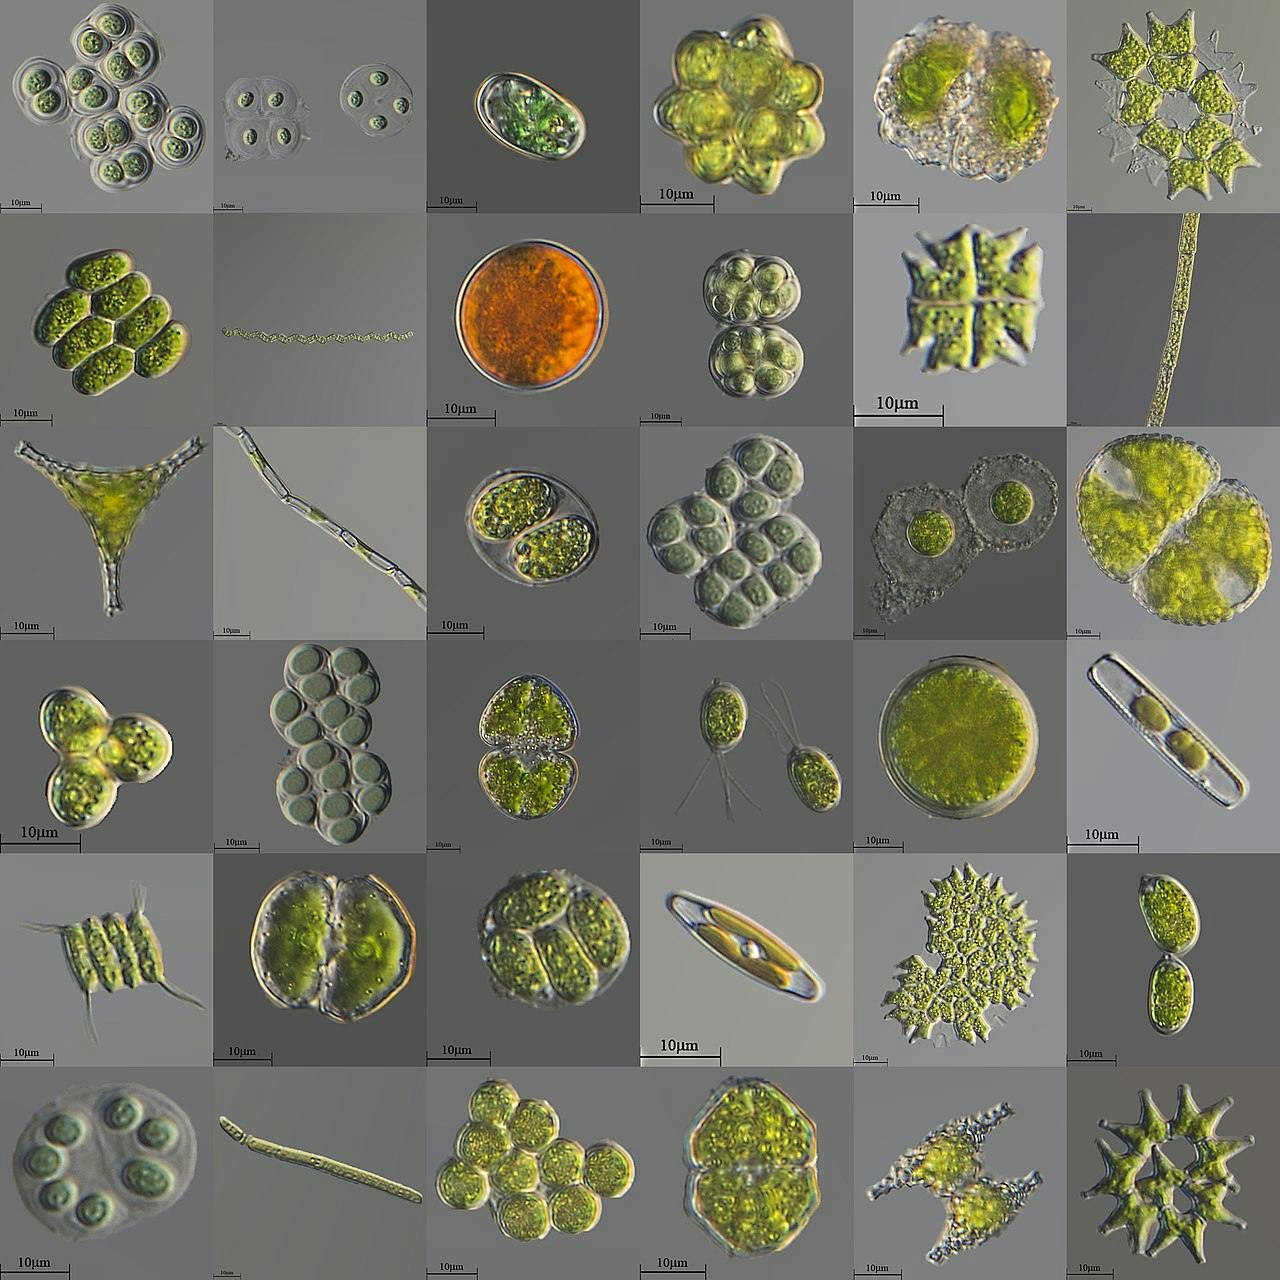 microalgae_shapes.jpg